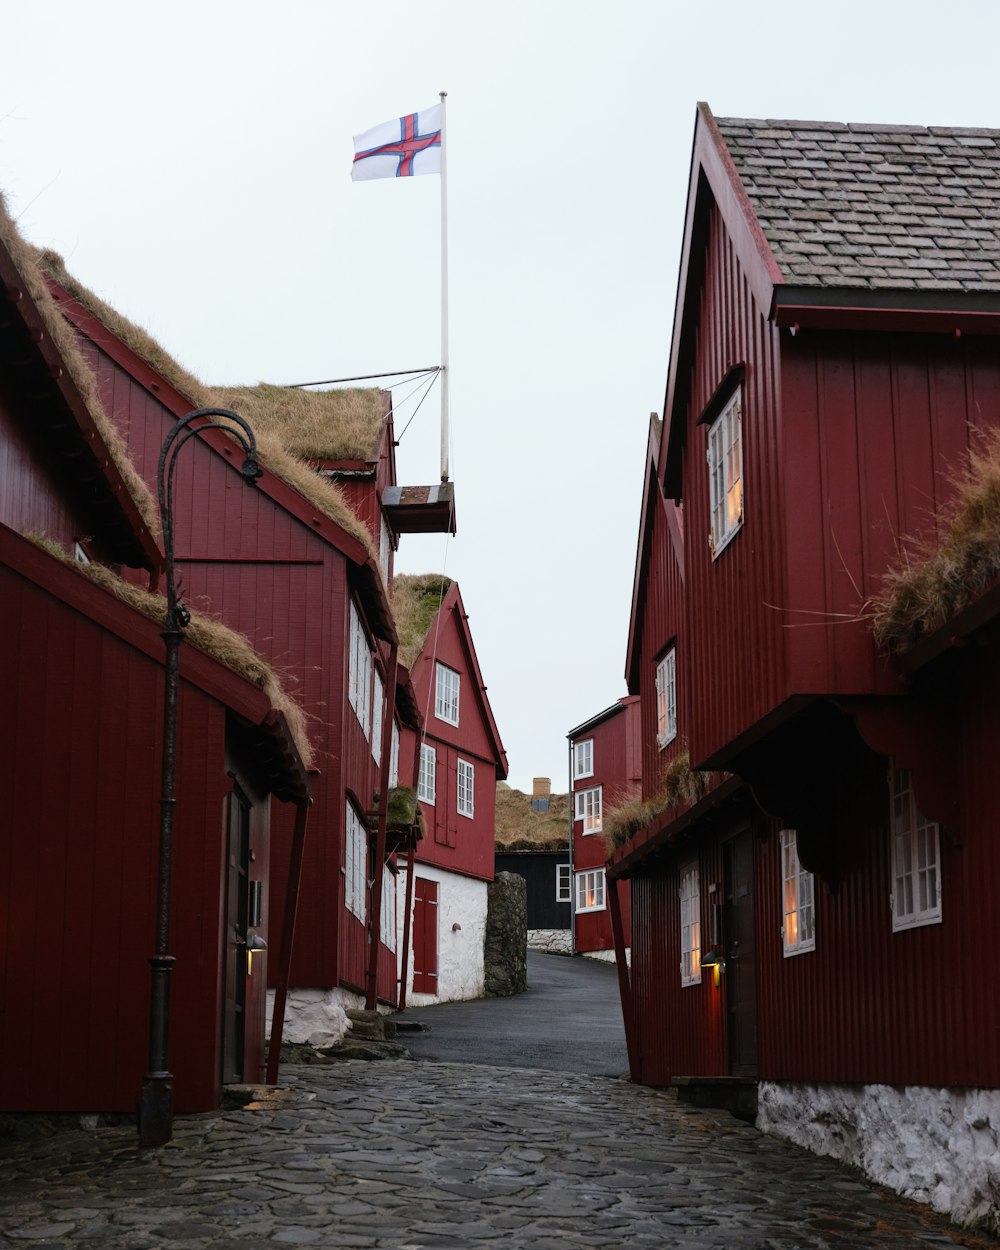 eine Kopfsteinpflasterstraße mit roten Gebäuden und einer Fahne an einem Mast